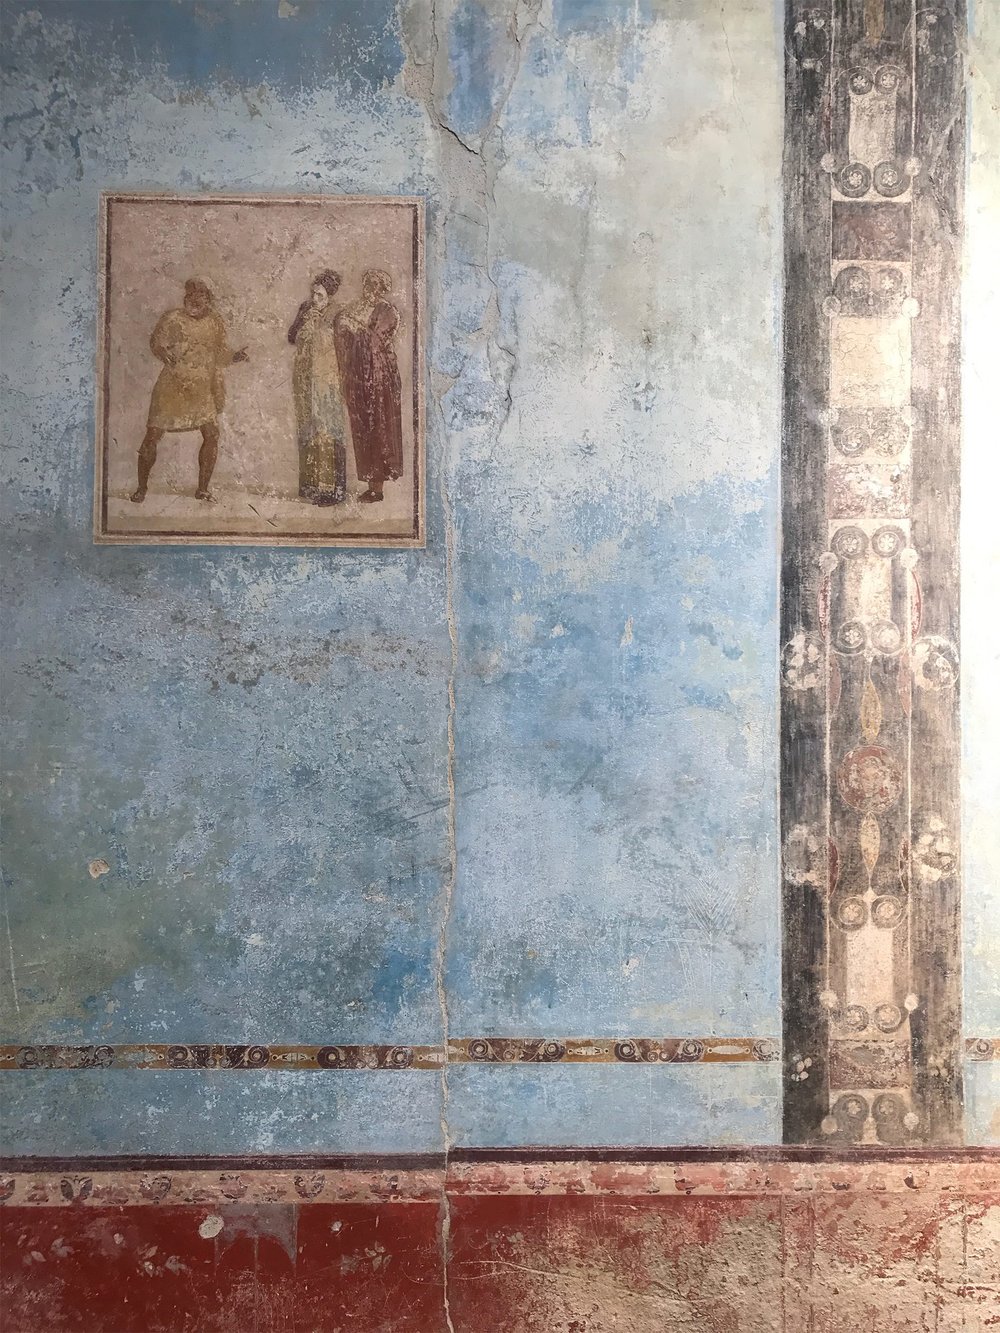 Pompei-wall-art2.jpg